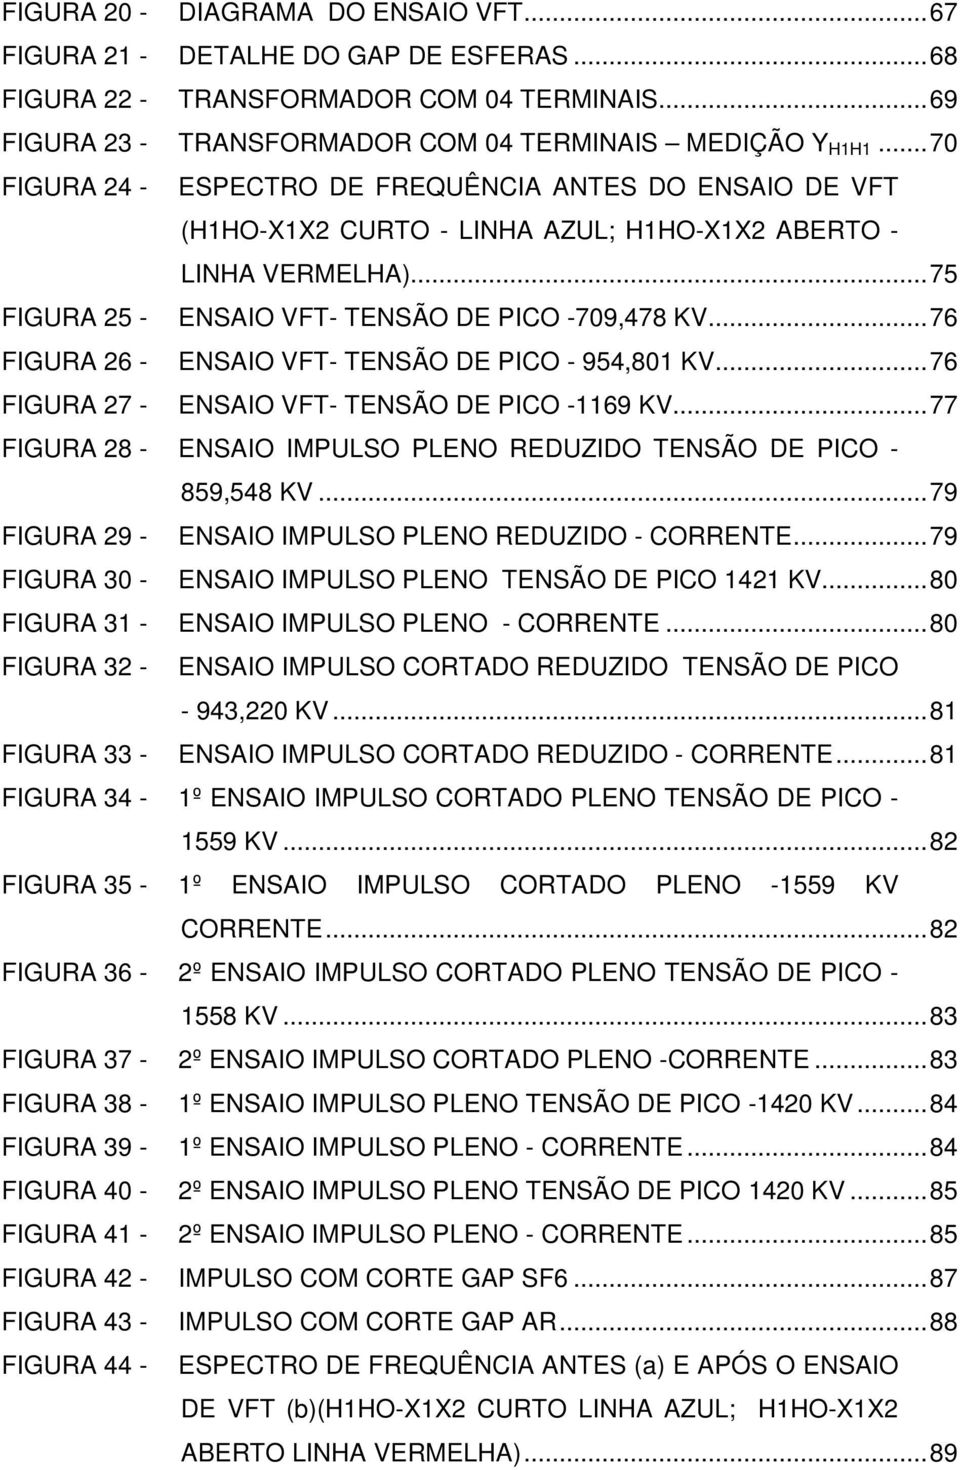 ..76 FIGURA 26 - ENSAIO VFT- TENSÃO DE PICO - 954,801 KV...76 FIGURA 27 - ENSAIO VFT- TENSÃO DE PICO -1169 KV...77 FIGURA 28 - ENSAIO IMPULSO PLENO REDUZIDO TENSÃO DE PICO - 859,548 KV.